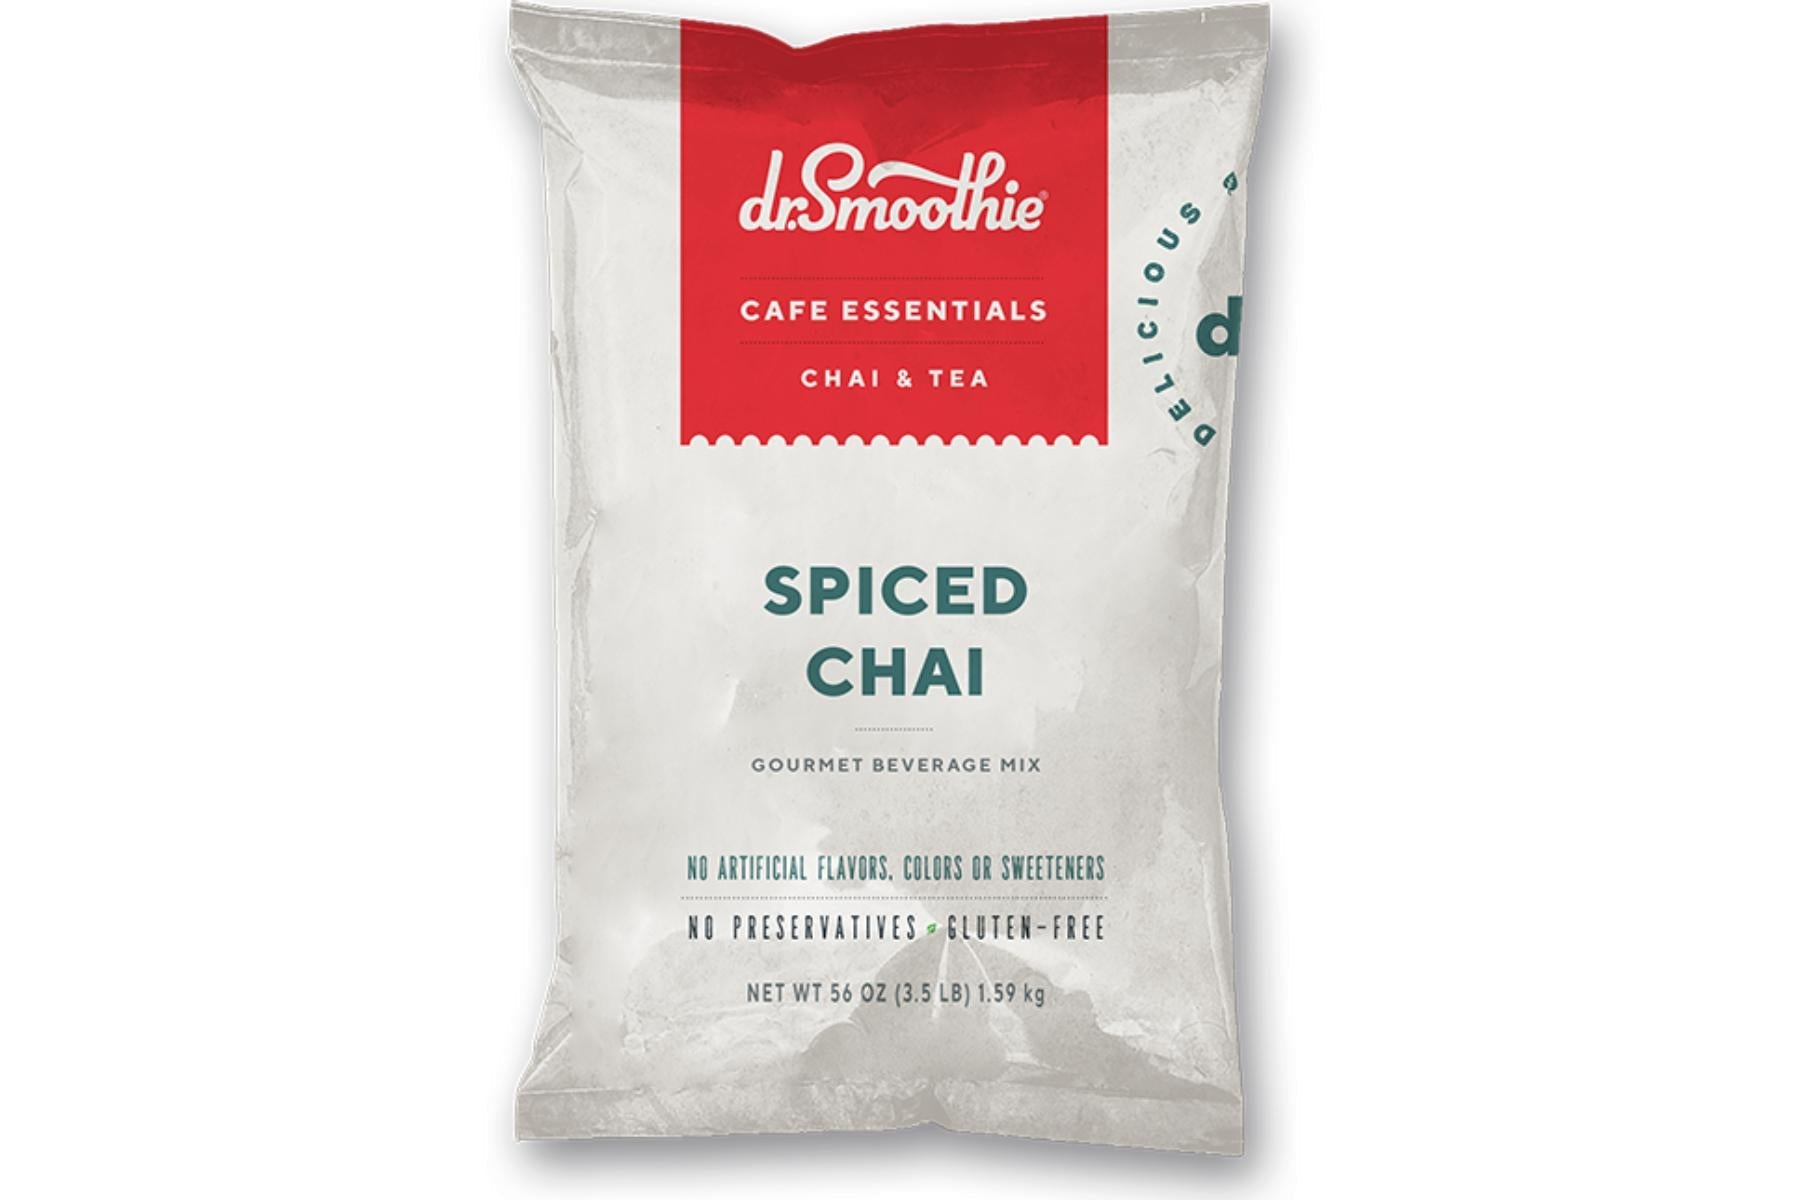 Dr. Smoothie Cafe Essentials Chai & Tea - 3.5lb Bulk Bag: Spiced Chai